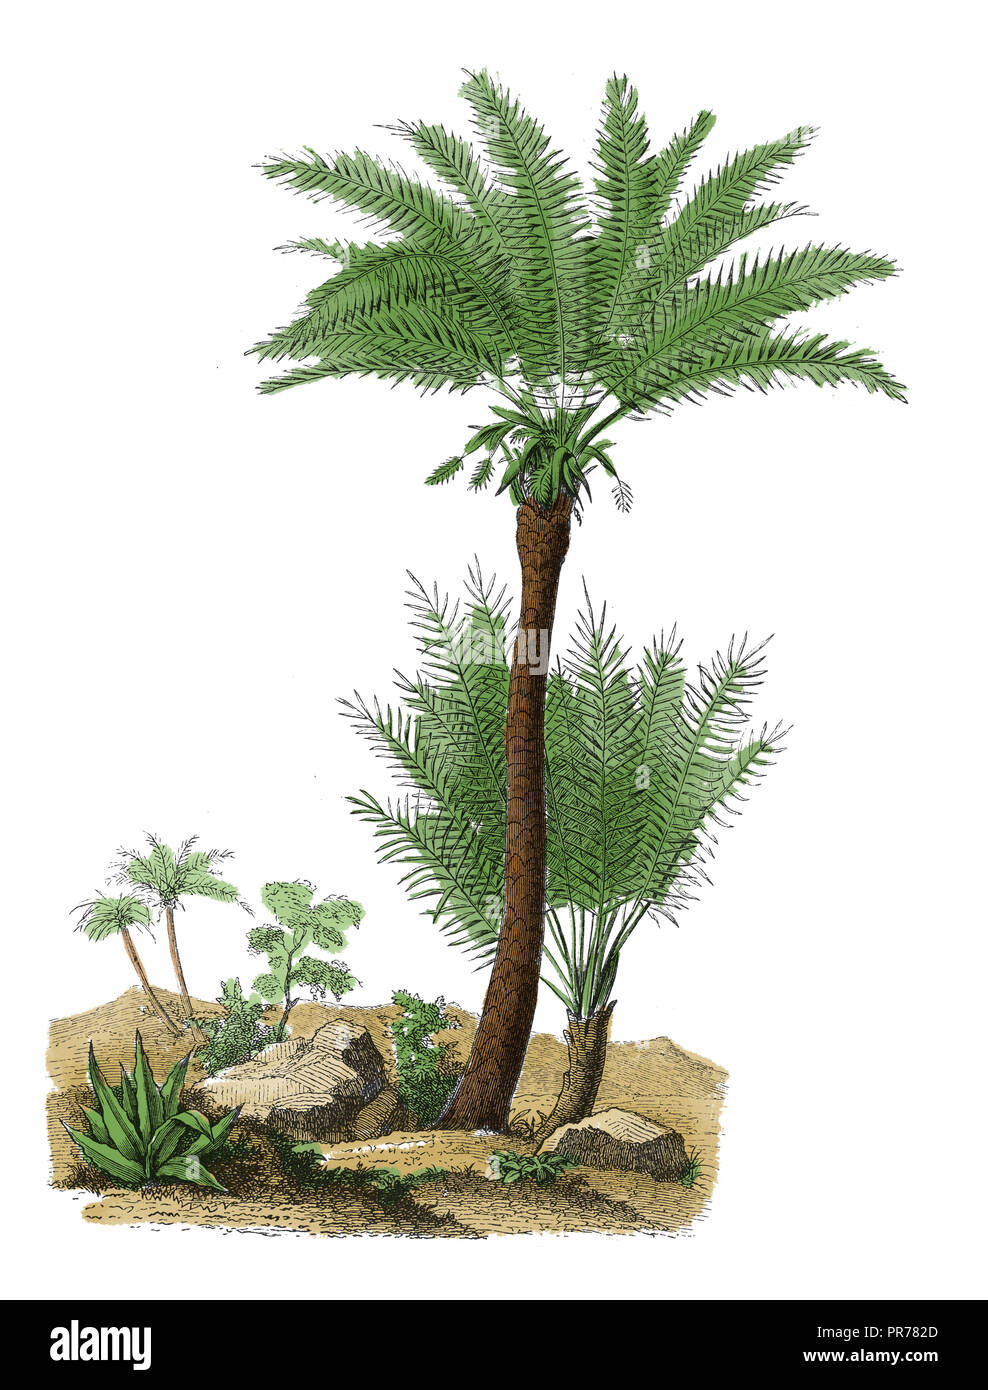 Xix secolo illustrazione di Phoenix dactylifera - un palm in genere Phoenix, coltivata per la sua dolce commestibili di frutta. Pubblicato in Systematischer Bil Foto Stock